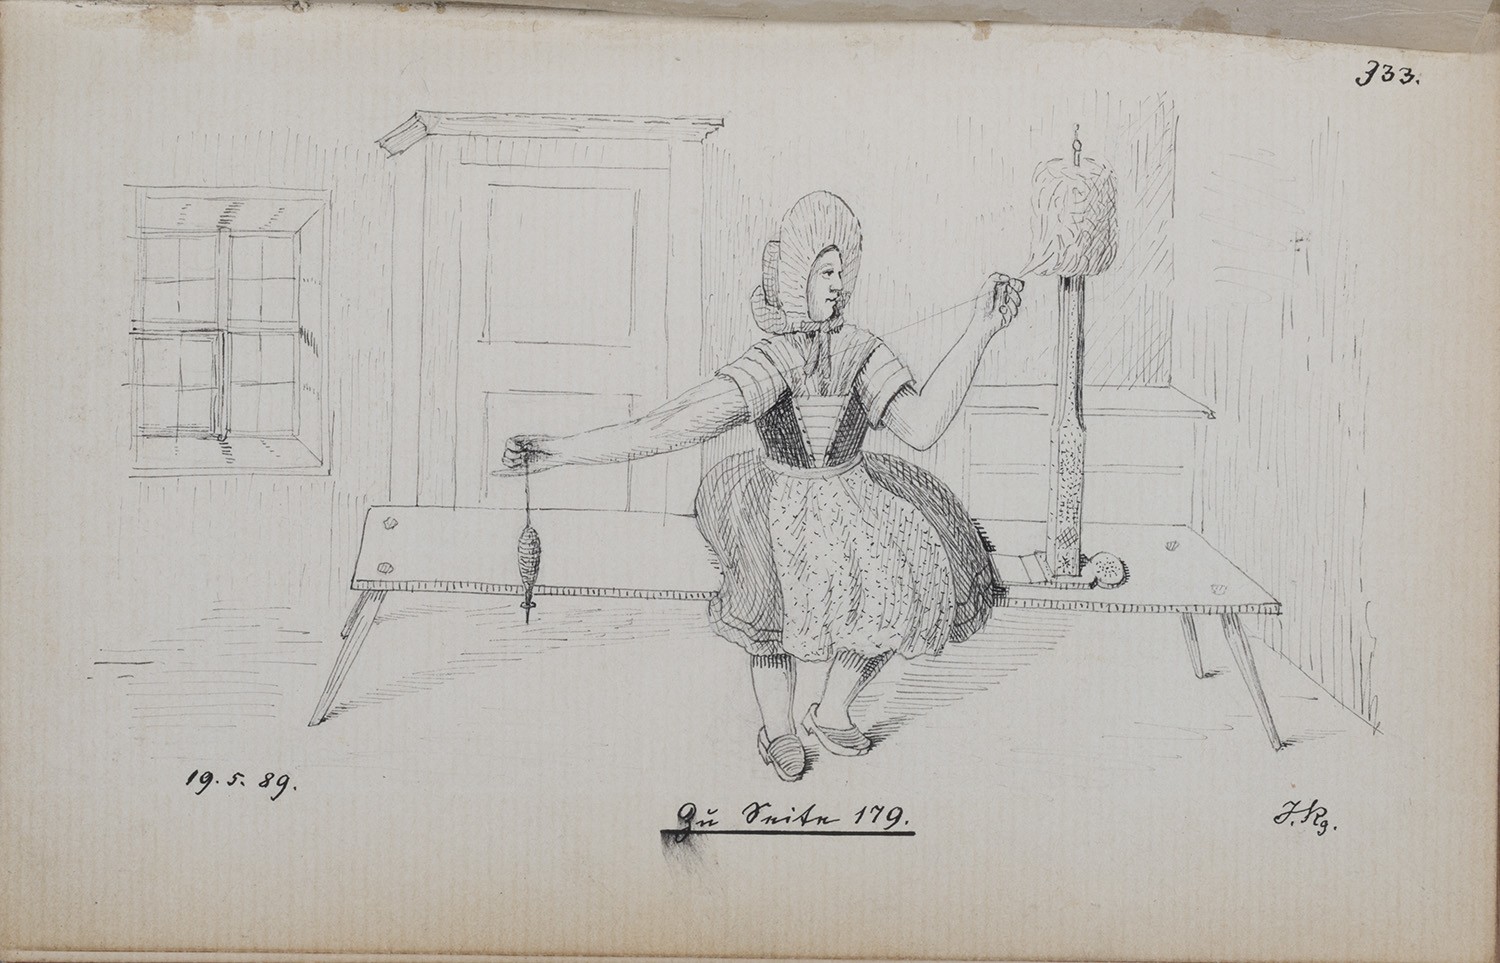 Gahry (Kr. Cottbus): Frau in Tracht beim Spinnen (Landesgeschichtliche Vereinigung für die Mark Brandenburg e.V., Archiv CC BY)